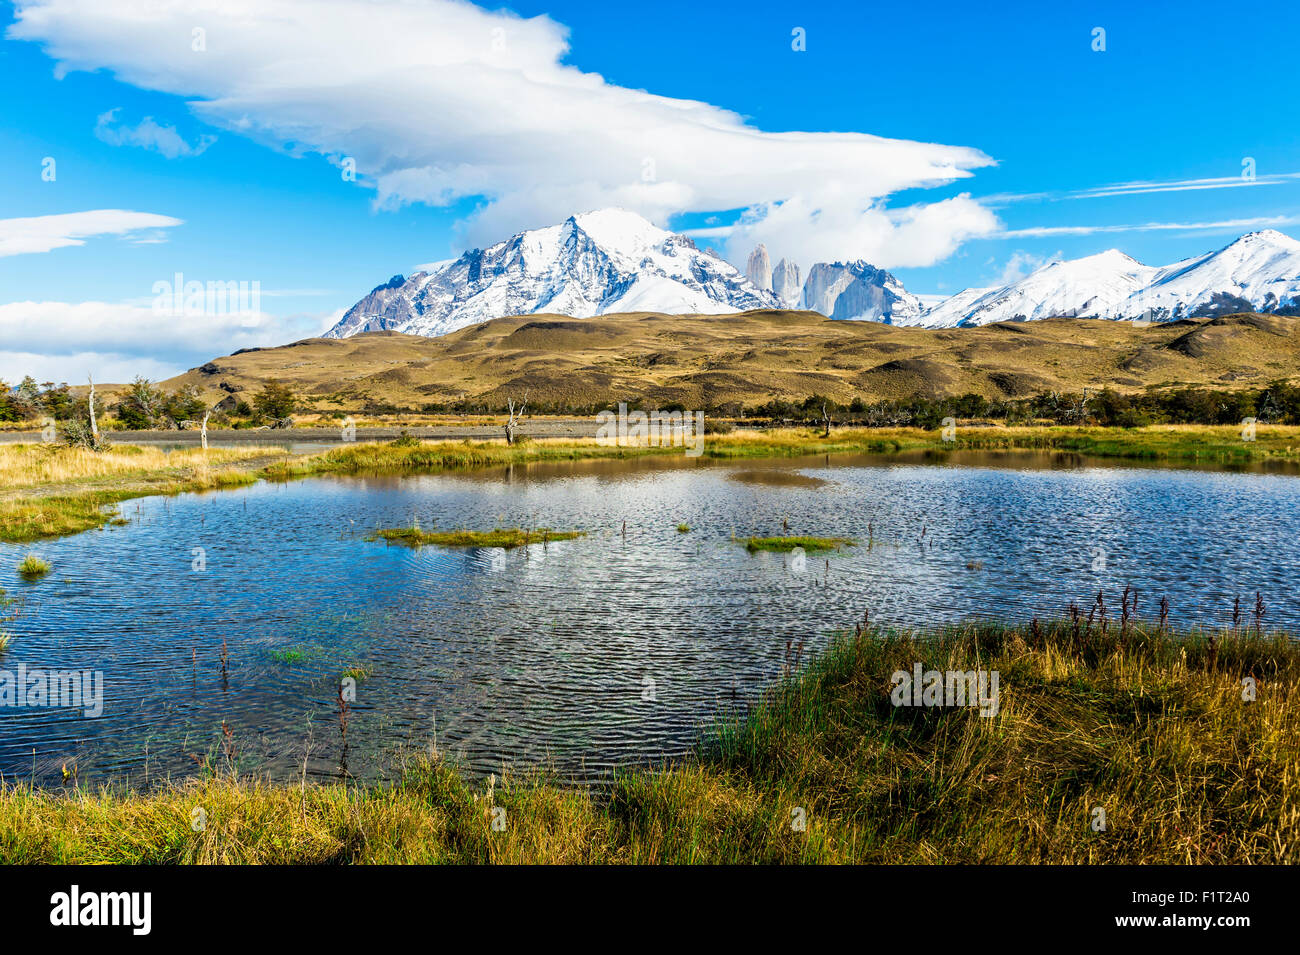 Cuernos del Paine, Parc National Torres del Paine, Patagonie chilienne, Chili, Amérique du Sud Banque D'Images